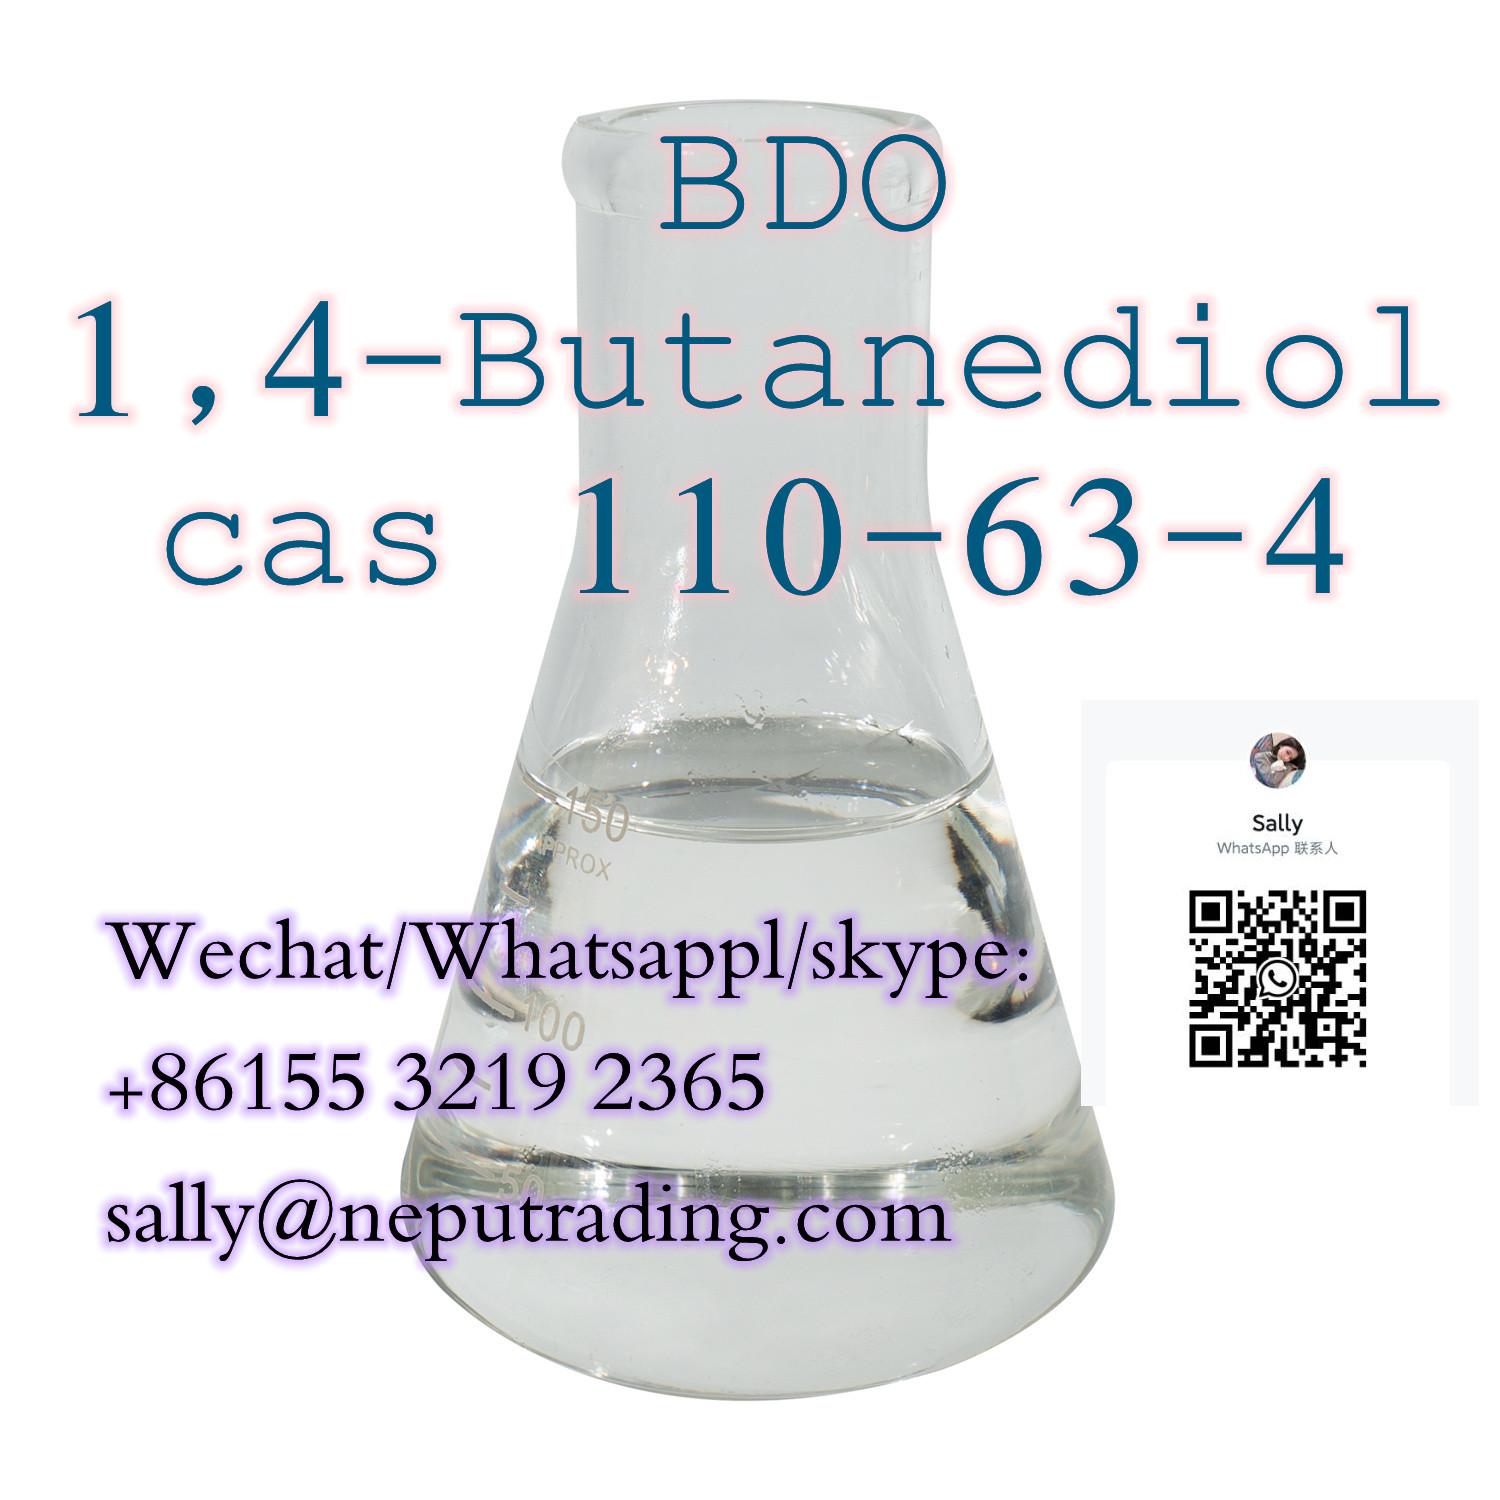 High Quality BDO/1,4-Butanediol Cas 110-63-4 with Special Line Transportation 